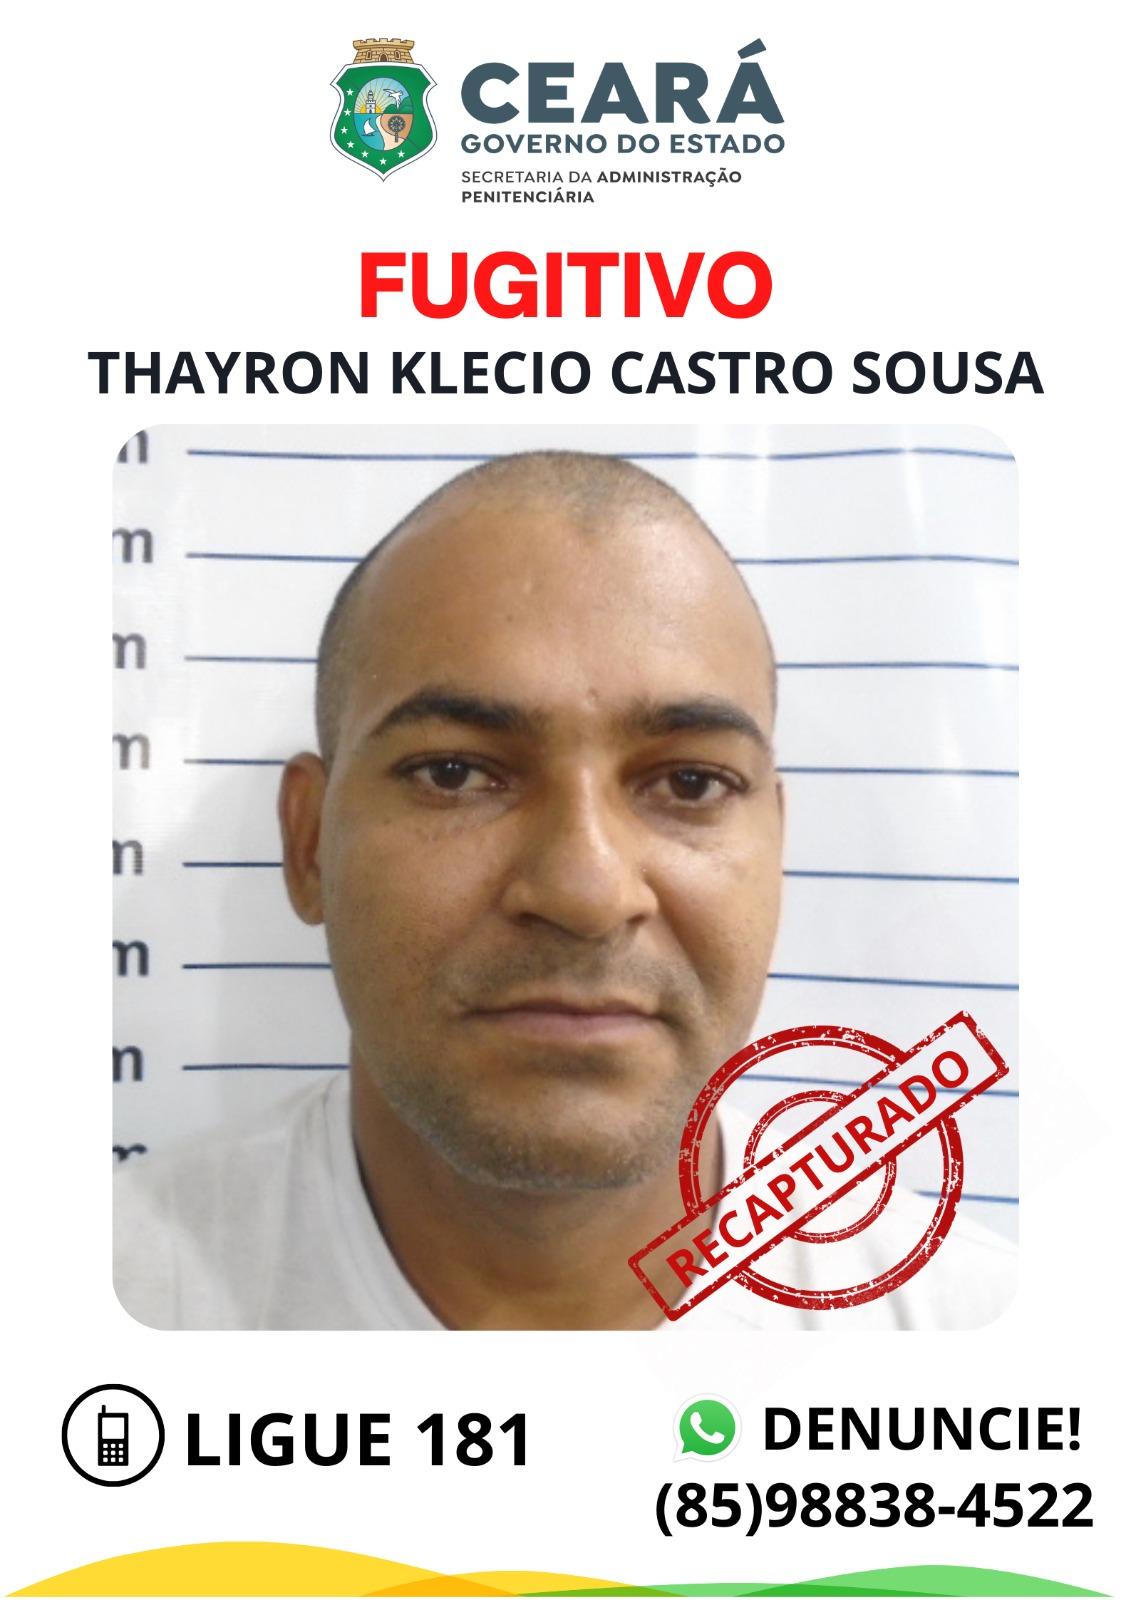 Thayron Klecio Castro Sousa foi recapturado após ser baleado em Fortaleza